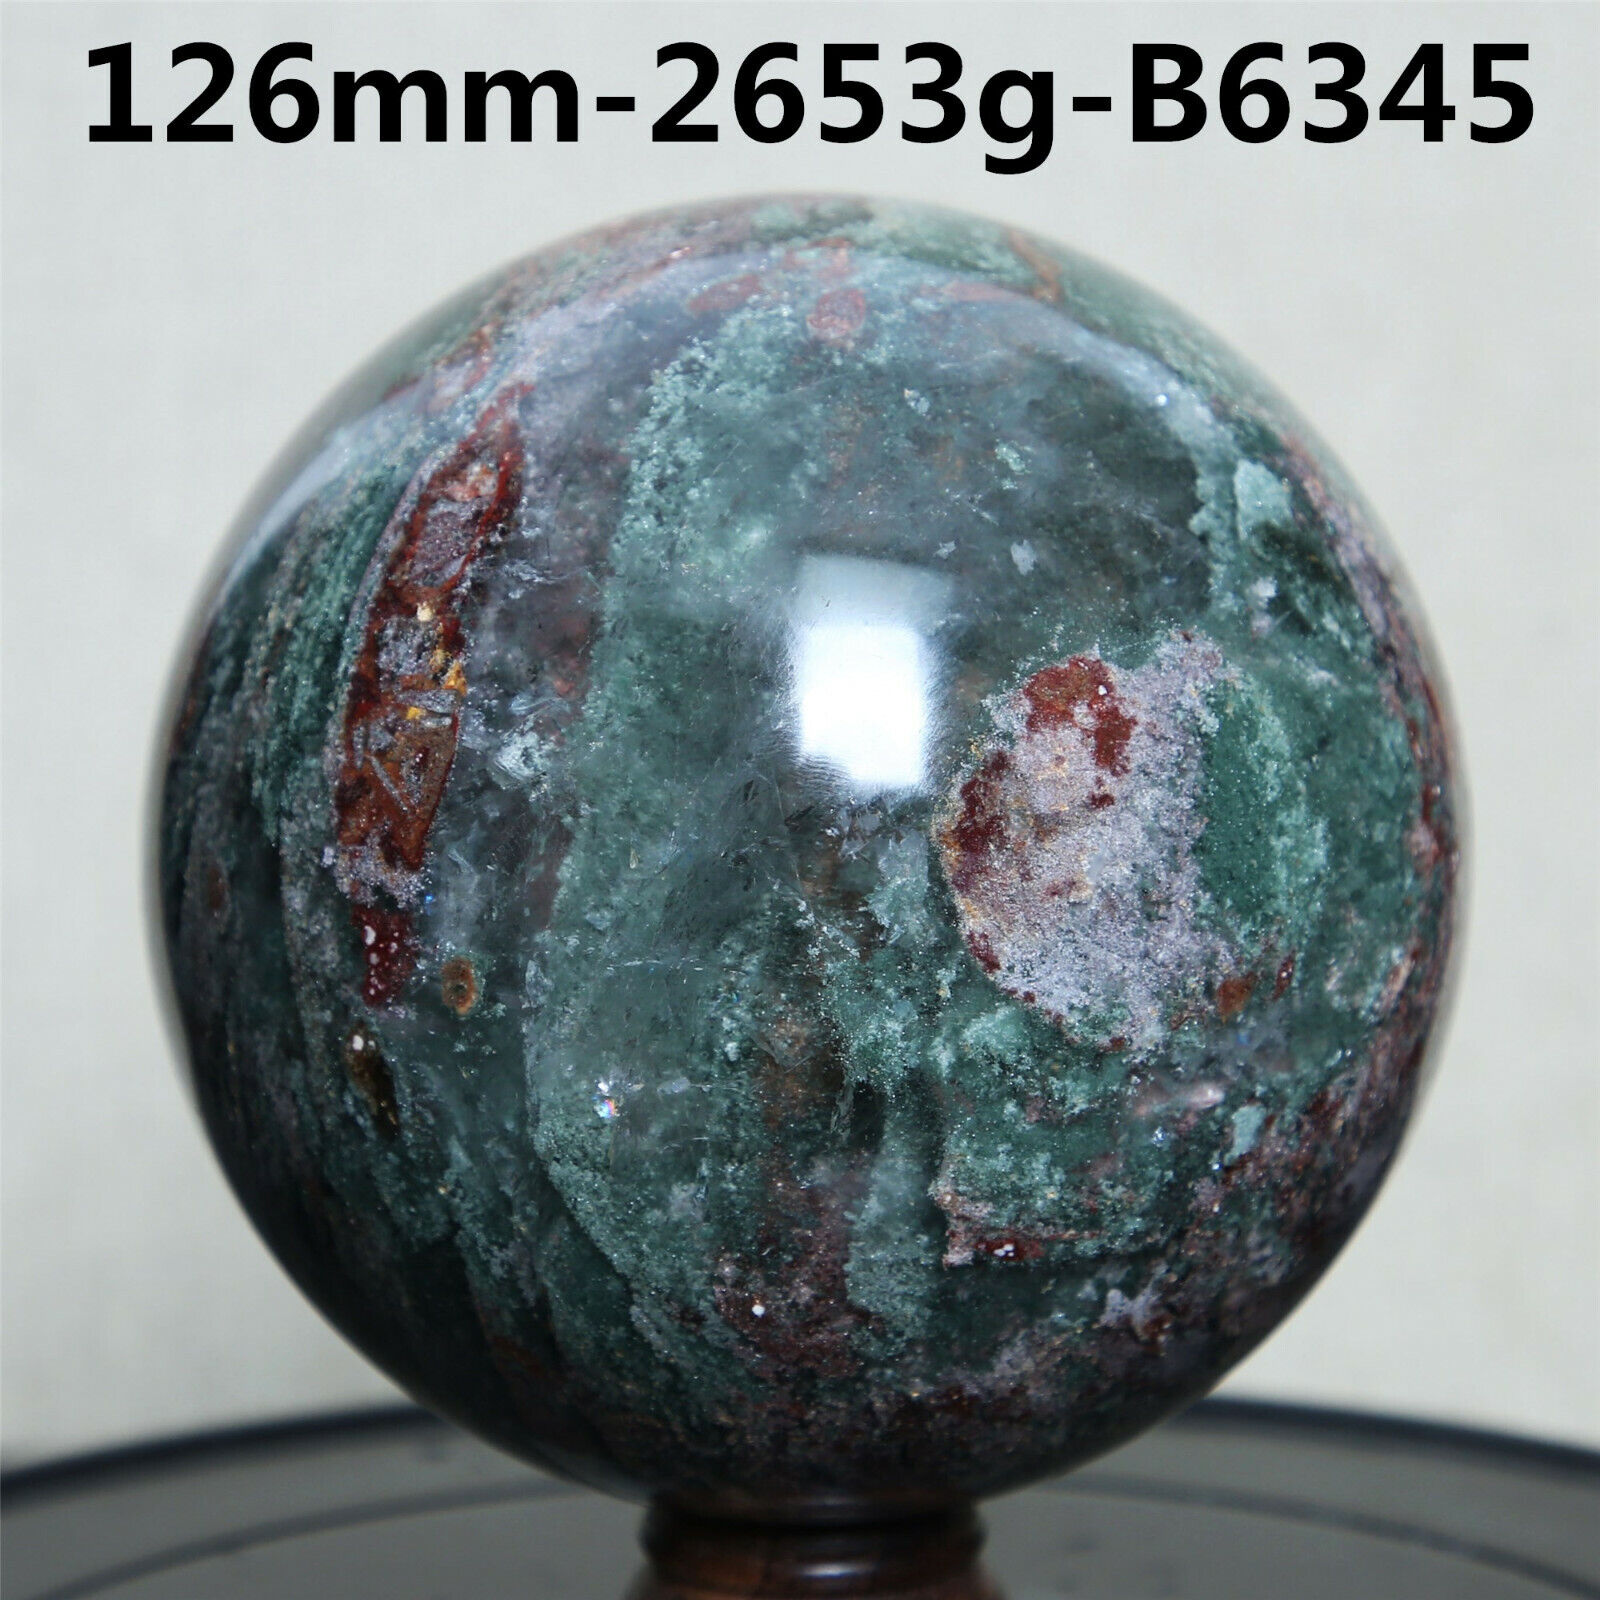 B6345-126mm2653g Natural Green Ghost Phantom Quartz Crystal Ball Sphere Specimen